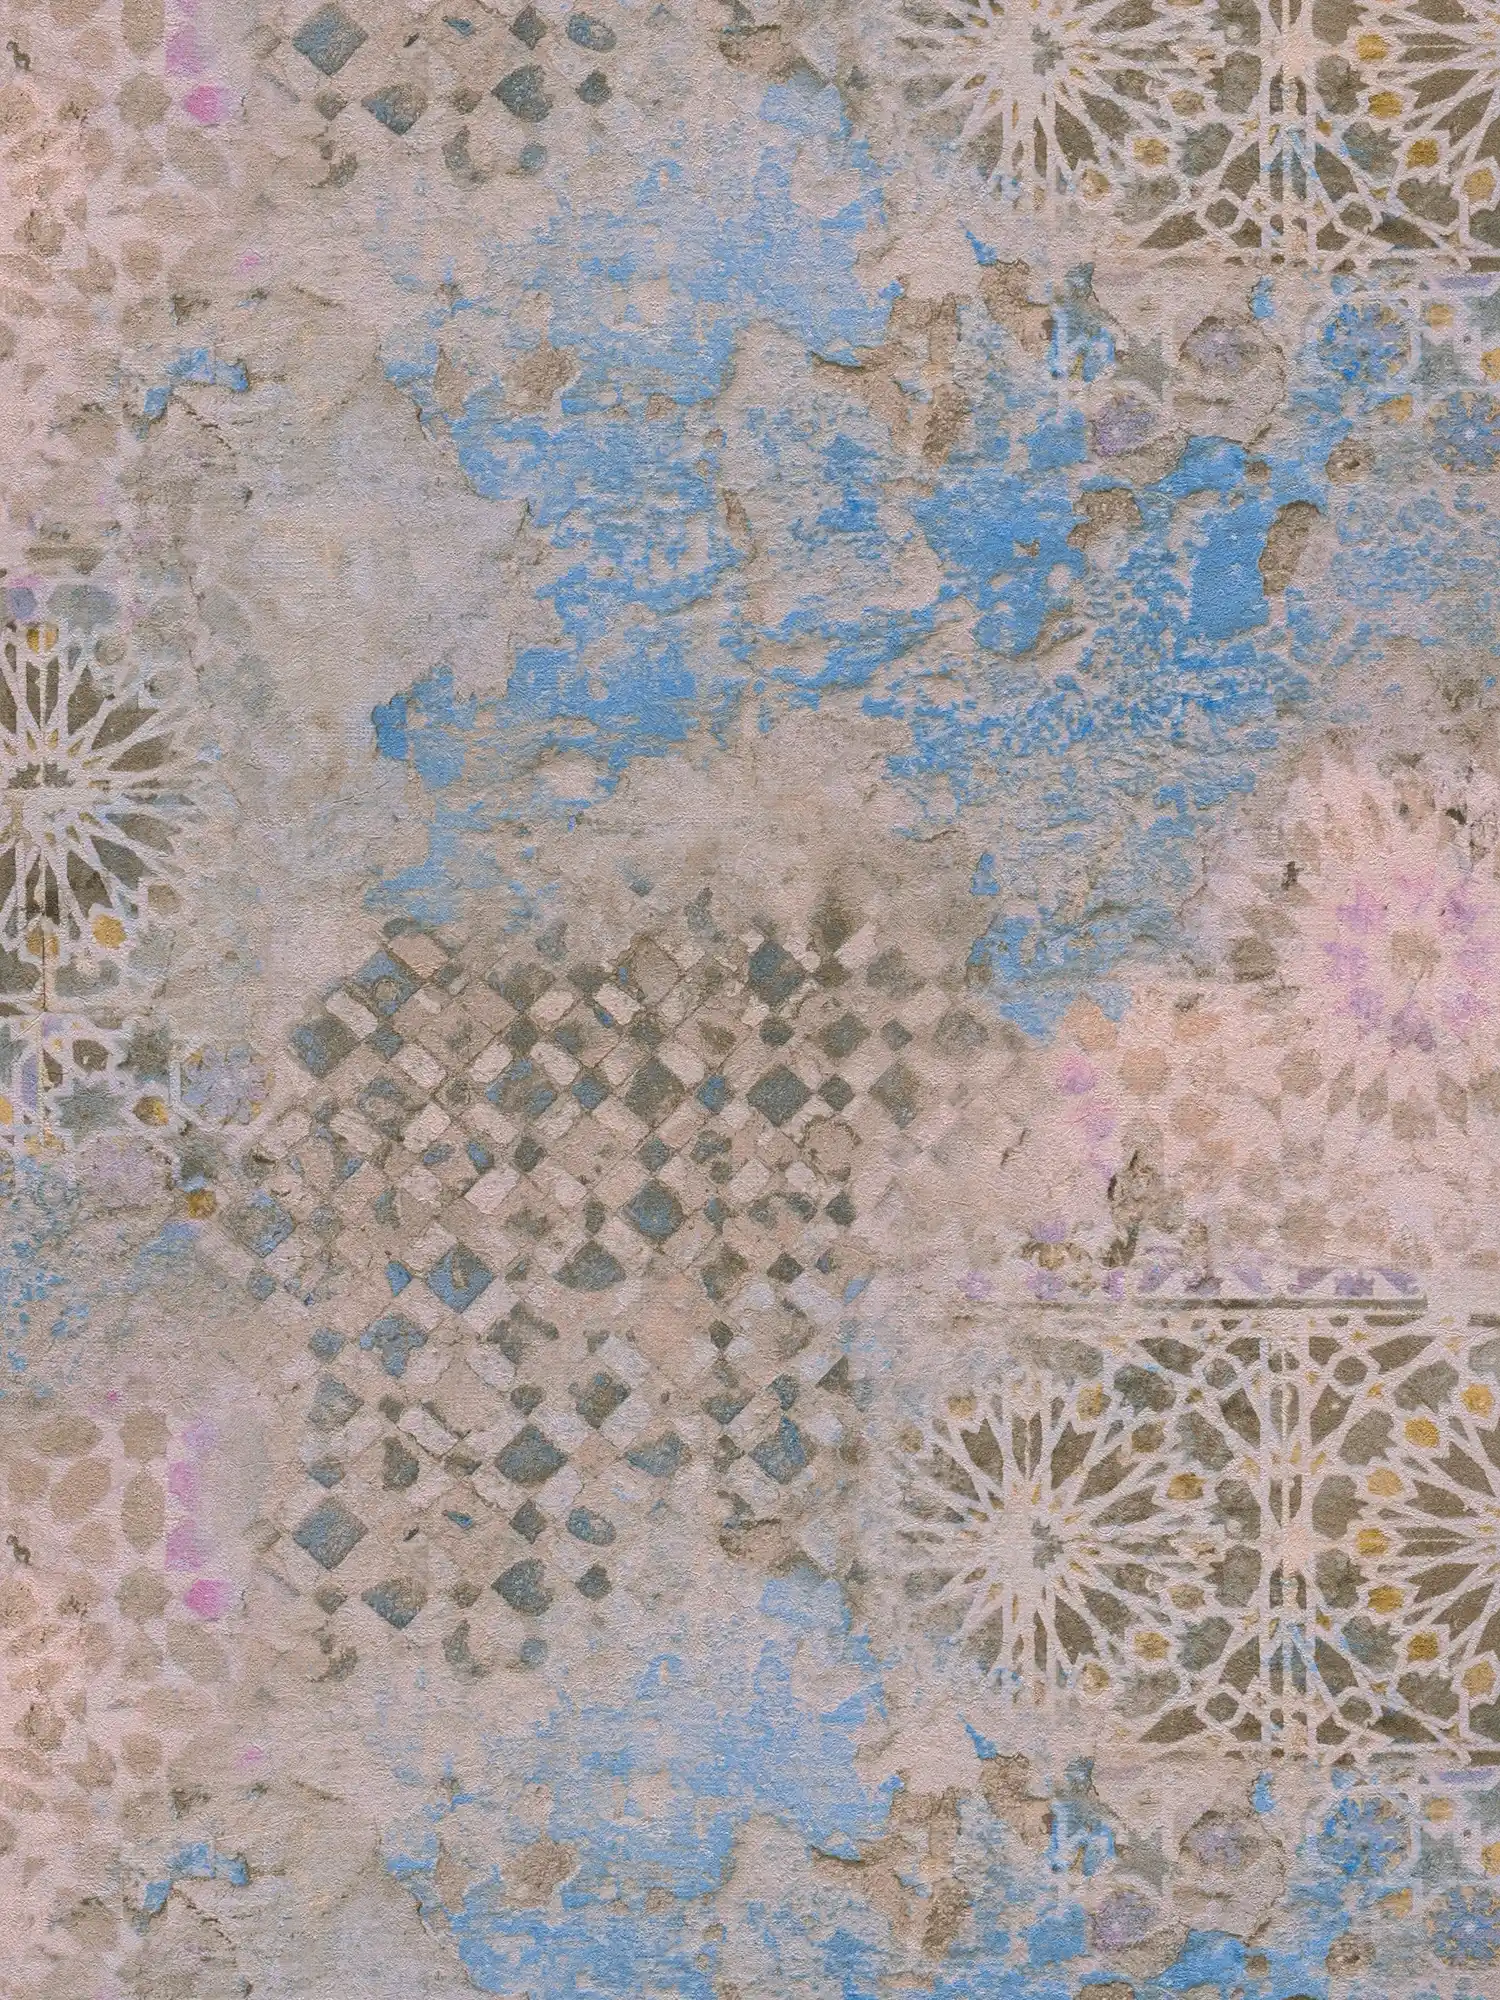         Bunte Mosaik Tapete mit rustikaler Wandoptik – Beige, Blau, Braun
    